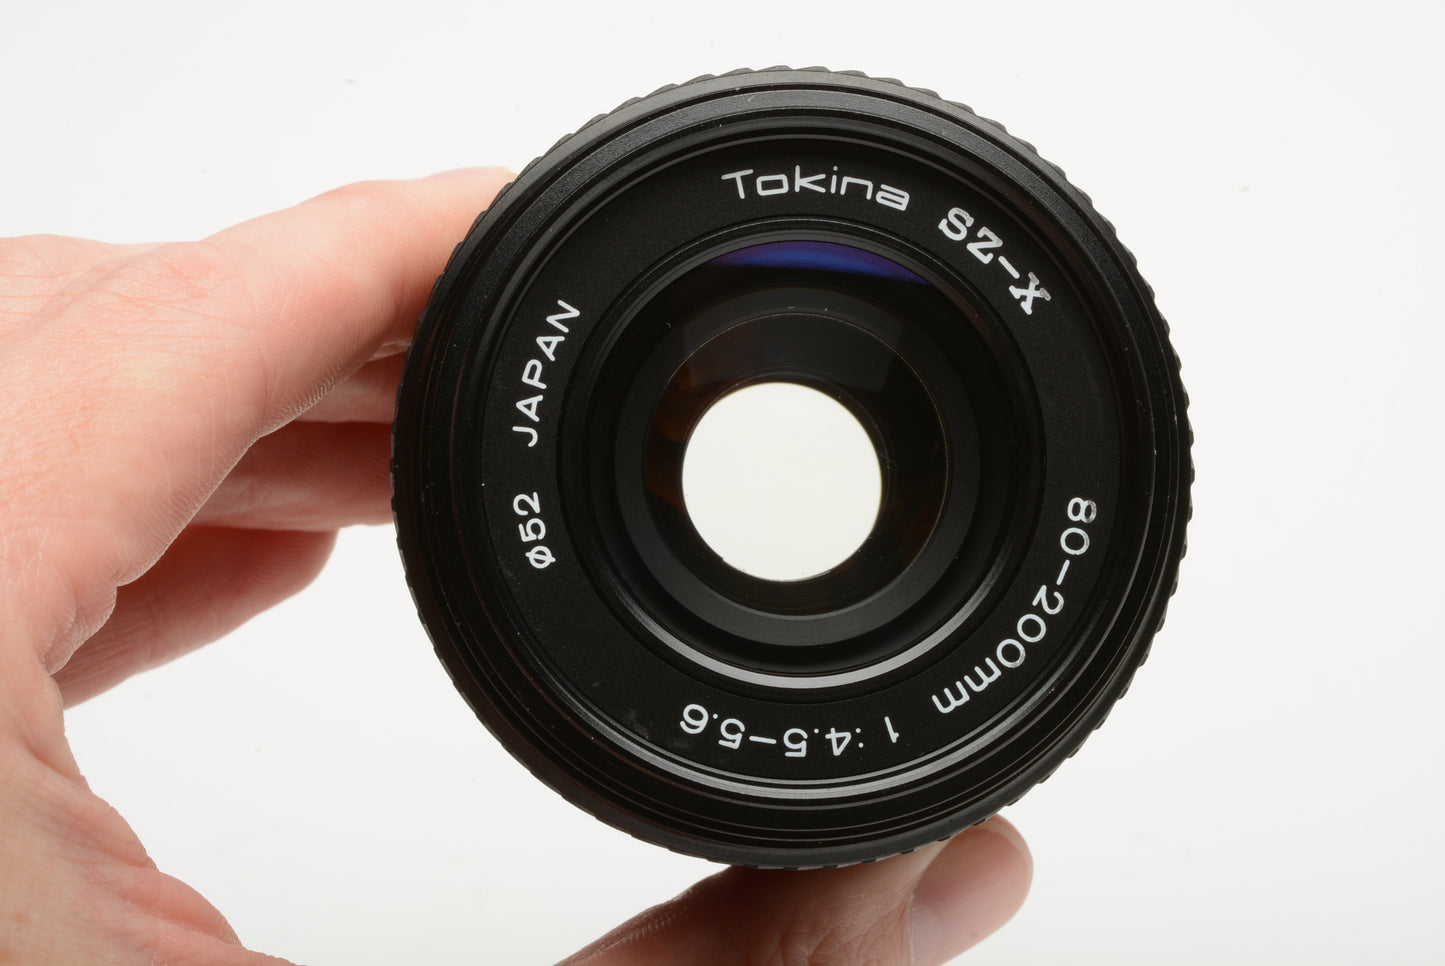 Tokina SZ-X MF 80-200mm f4.5 - 5.6 for Minolta MD mount